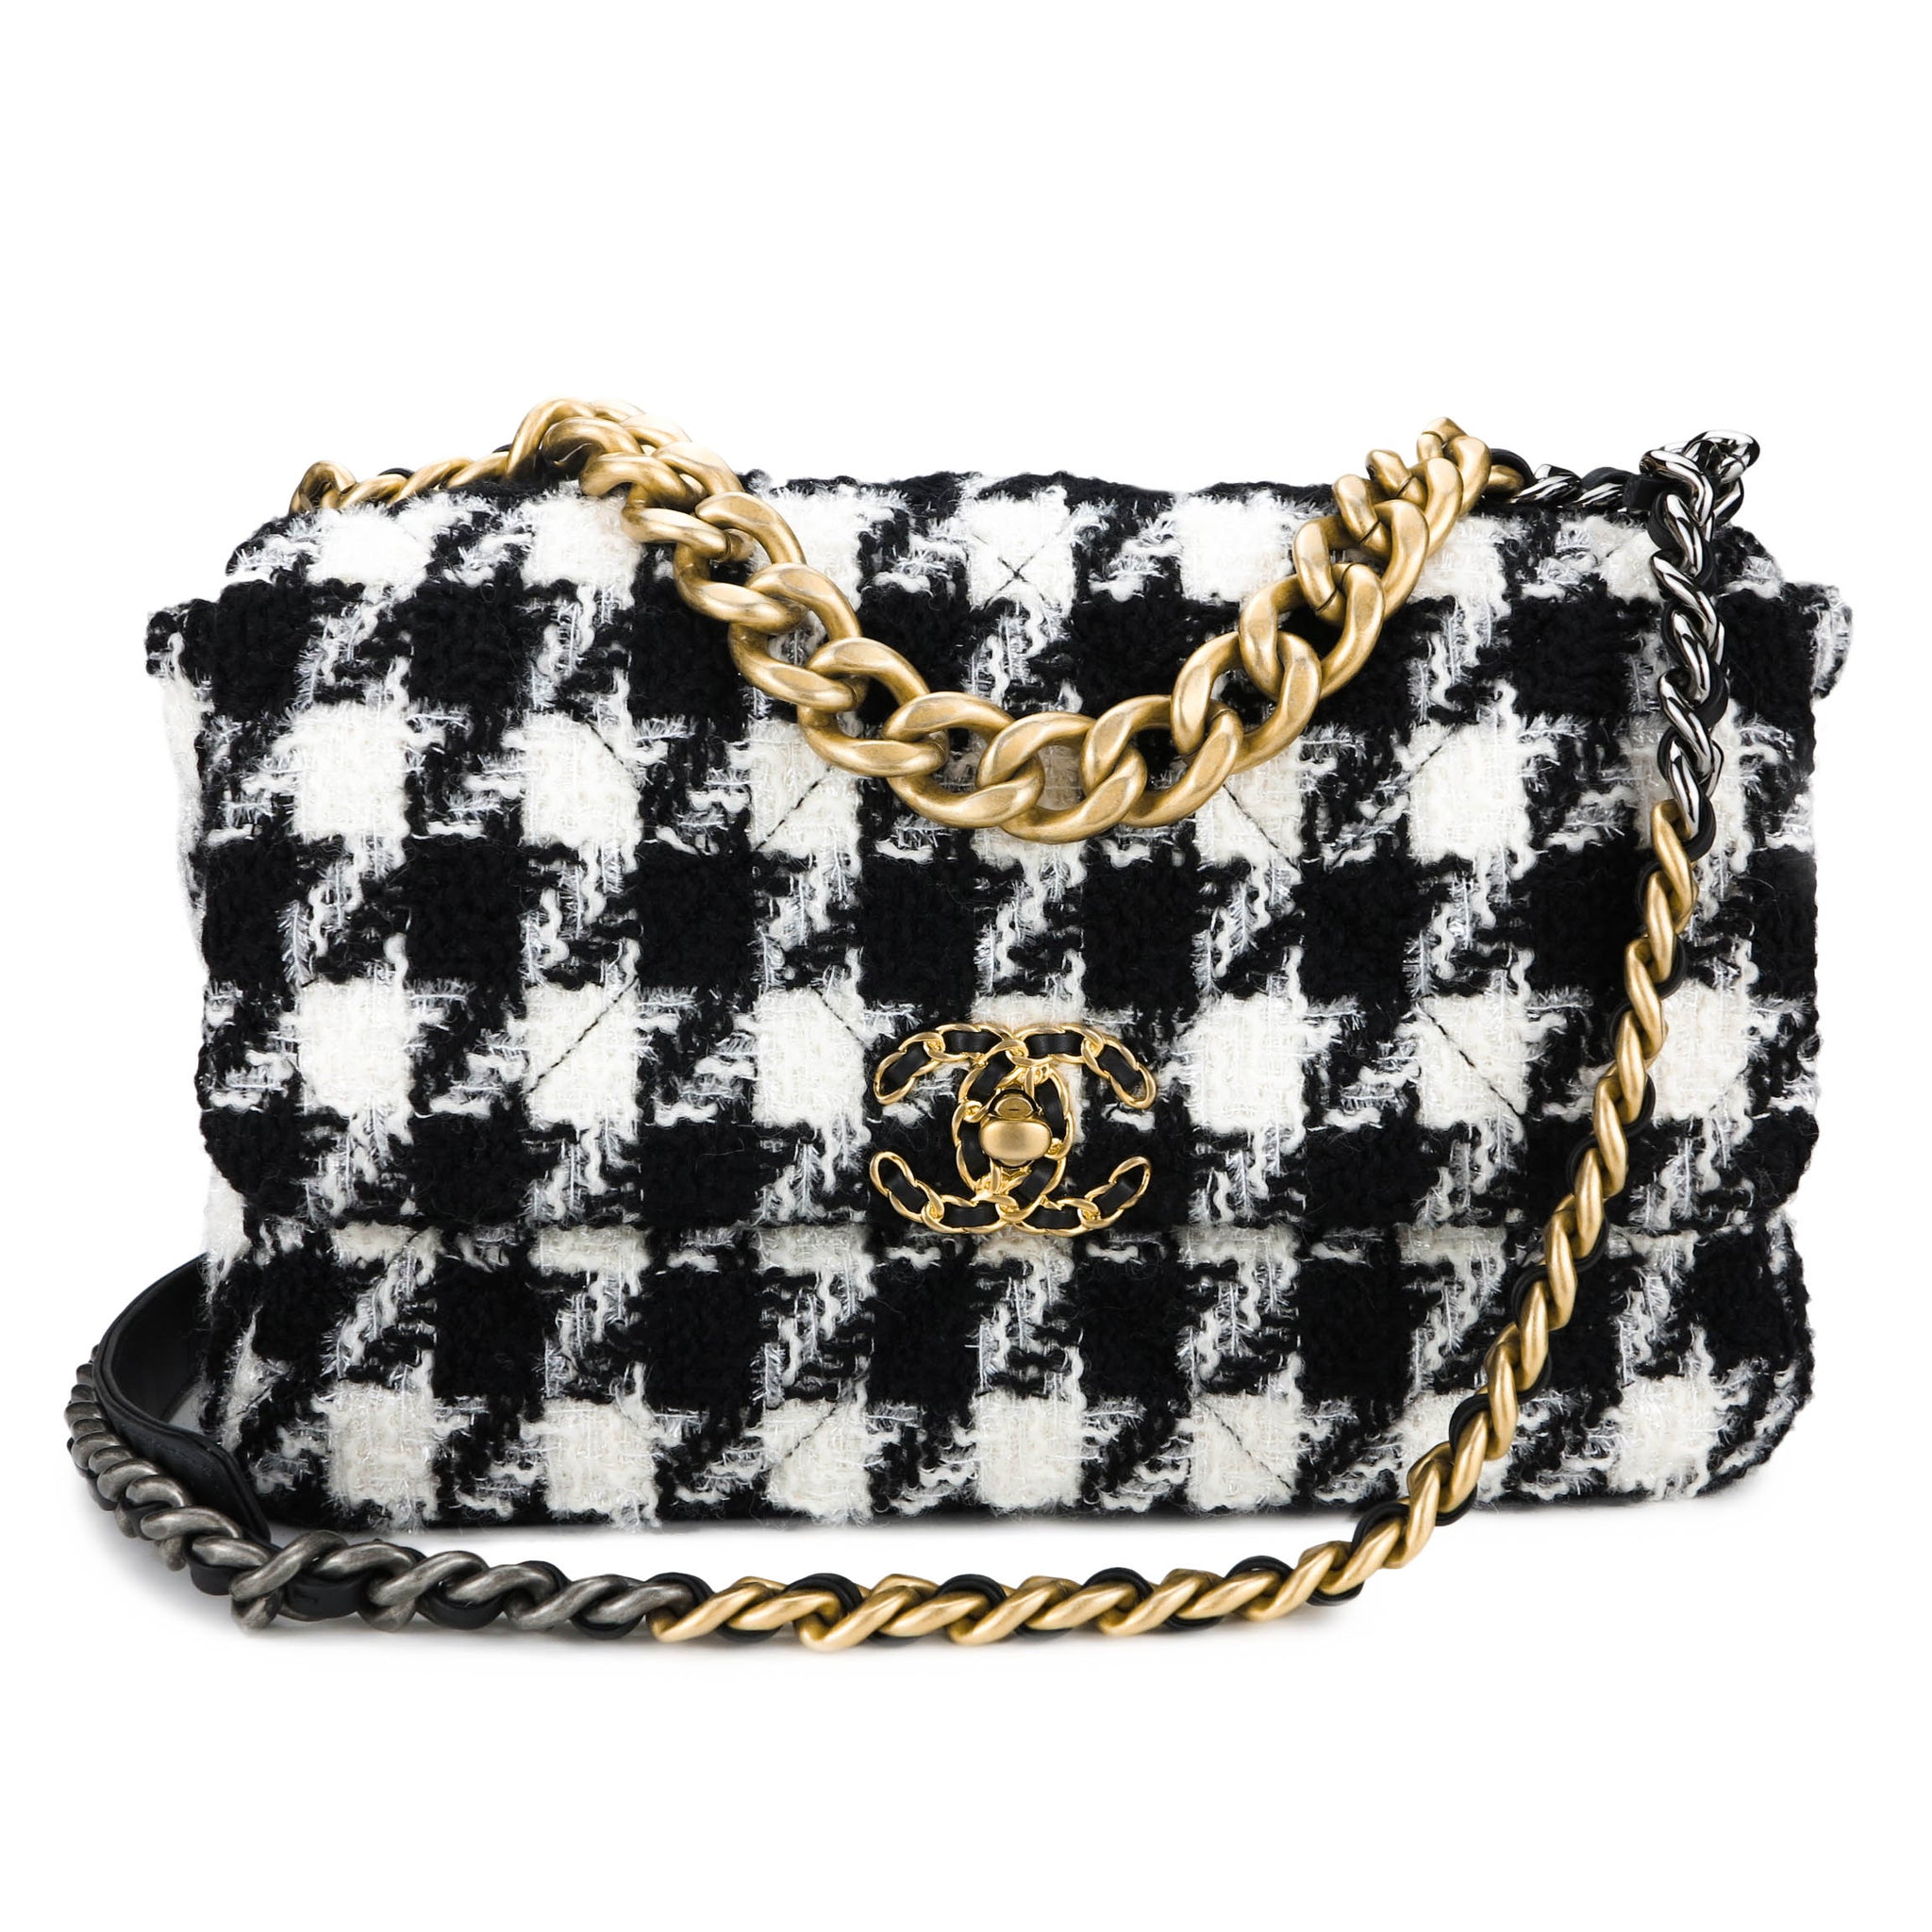 Túi Chanel 22 Small Handbag đen logo trắng da bê 34cm best quality